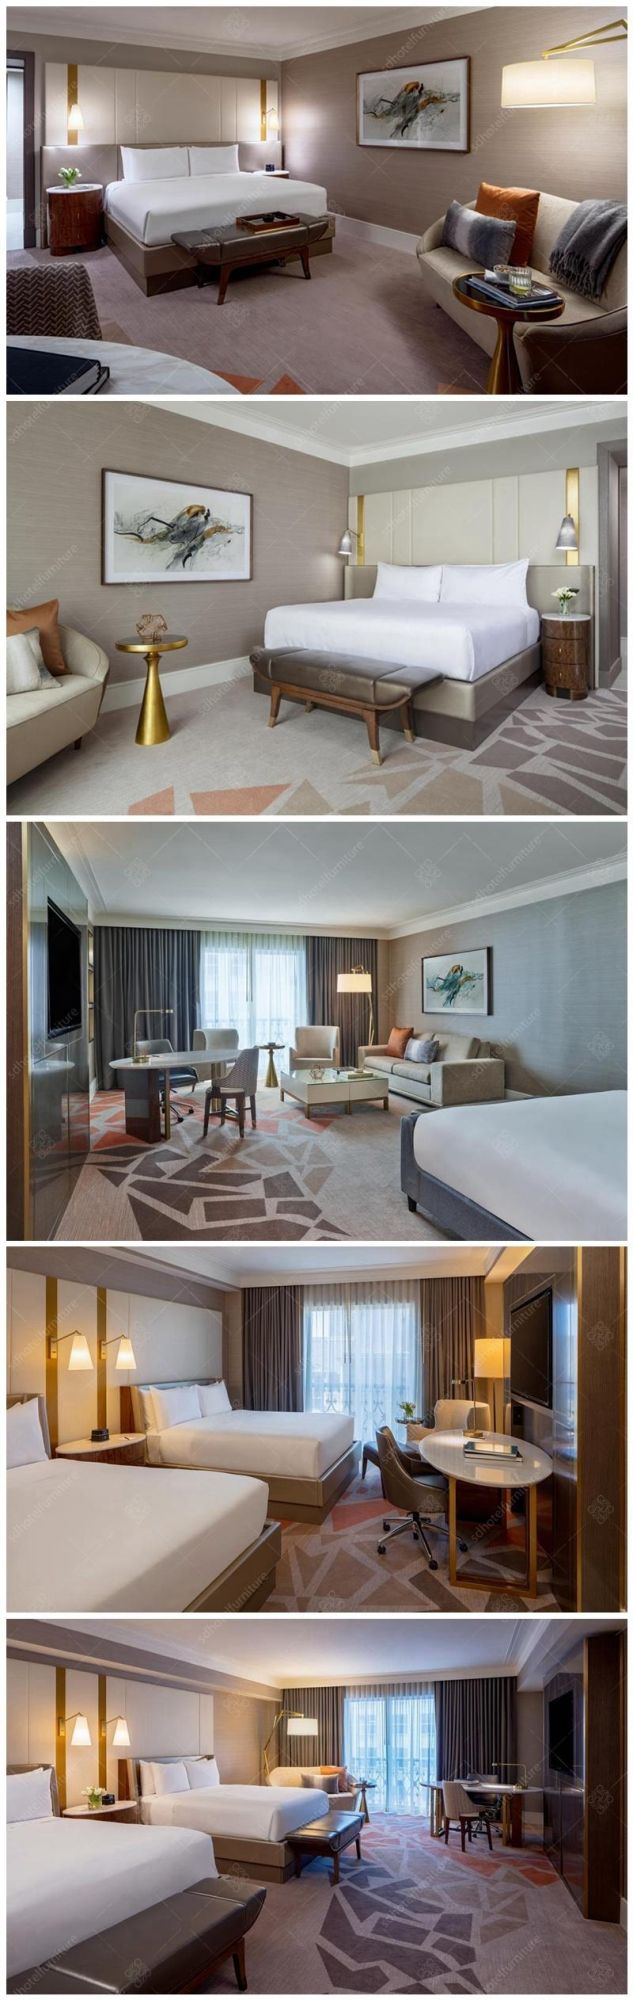 Artistic Design Modern Appearance 5 Hotel Bedroom Furniture Sets Commercial Use